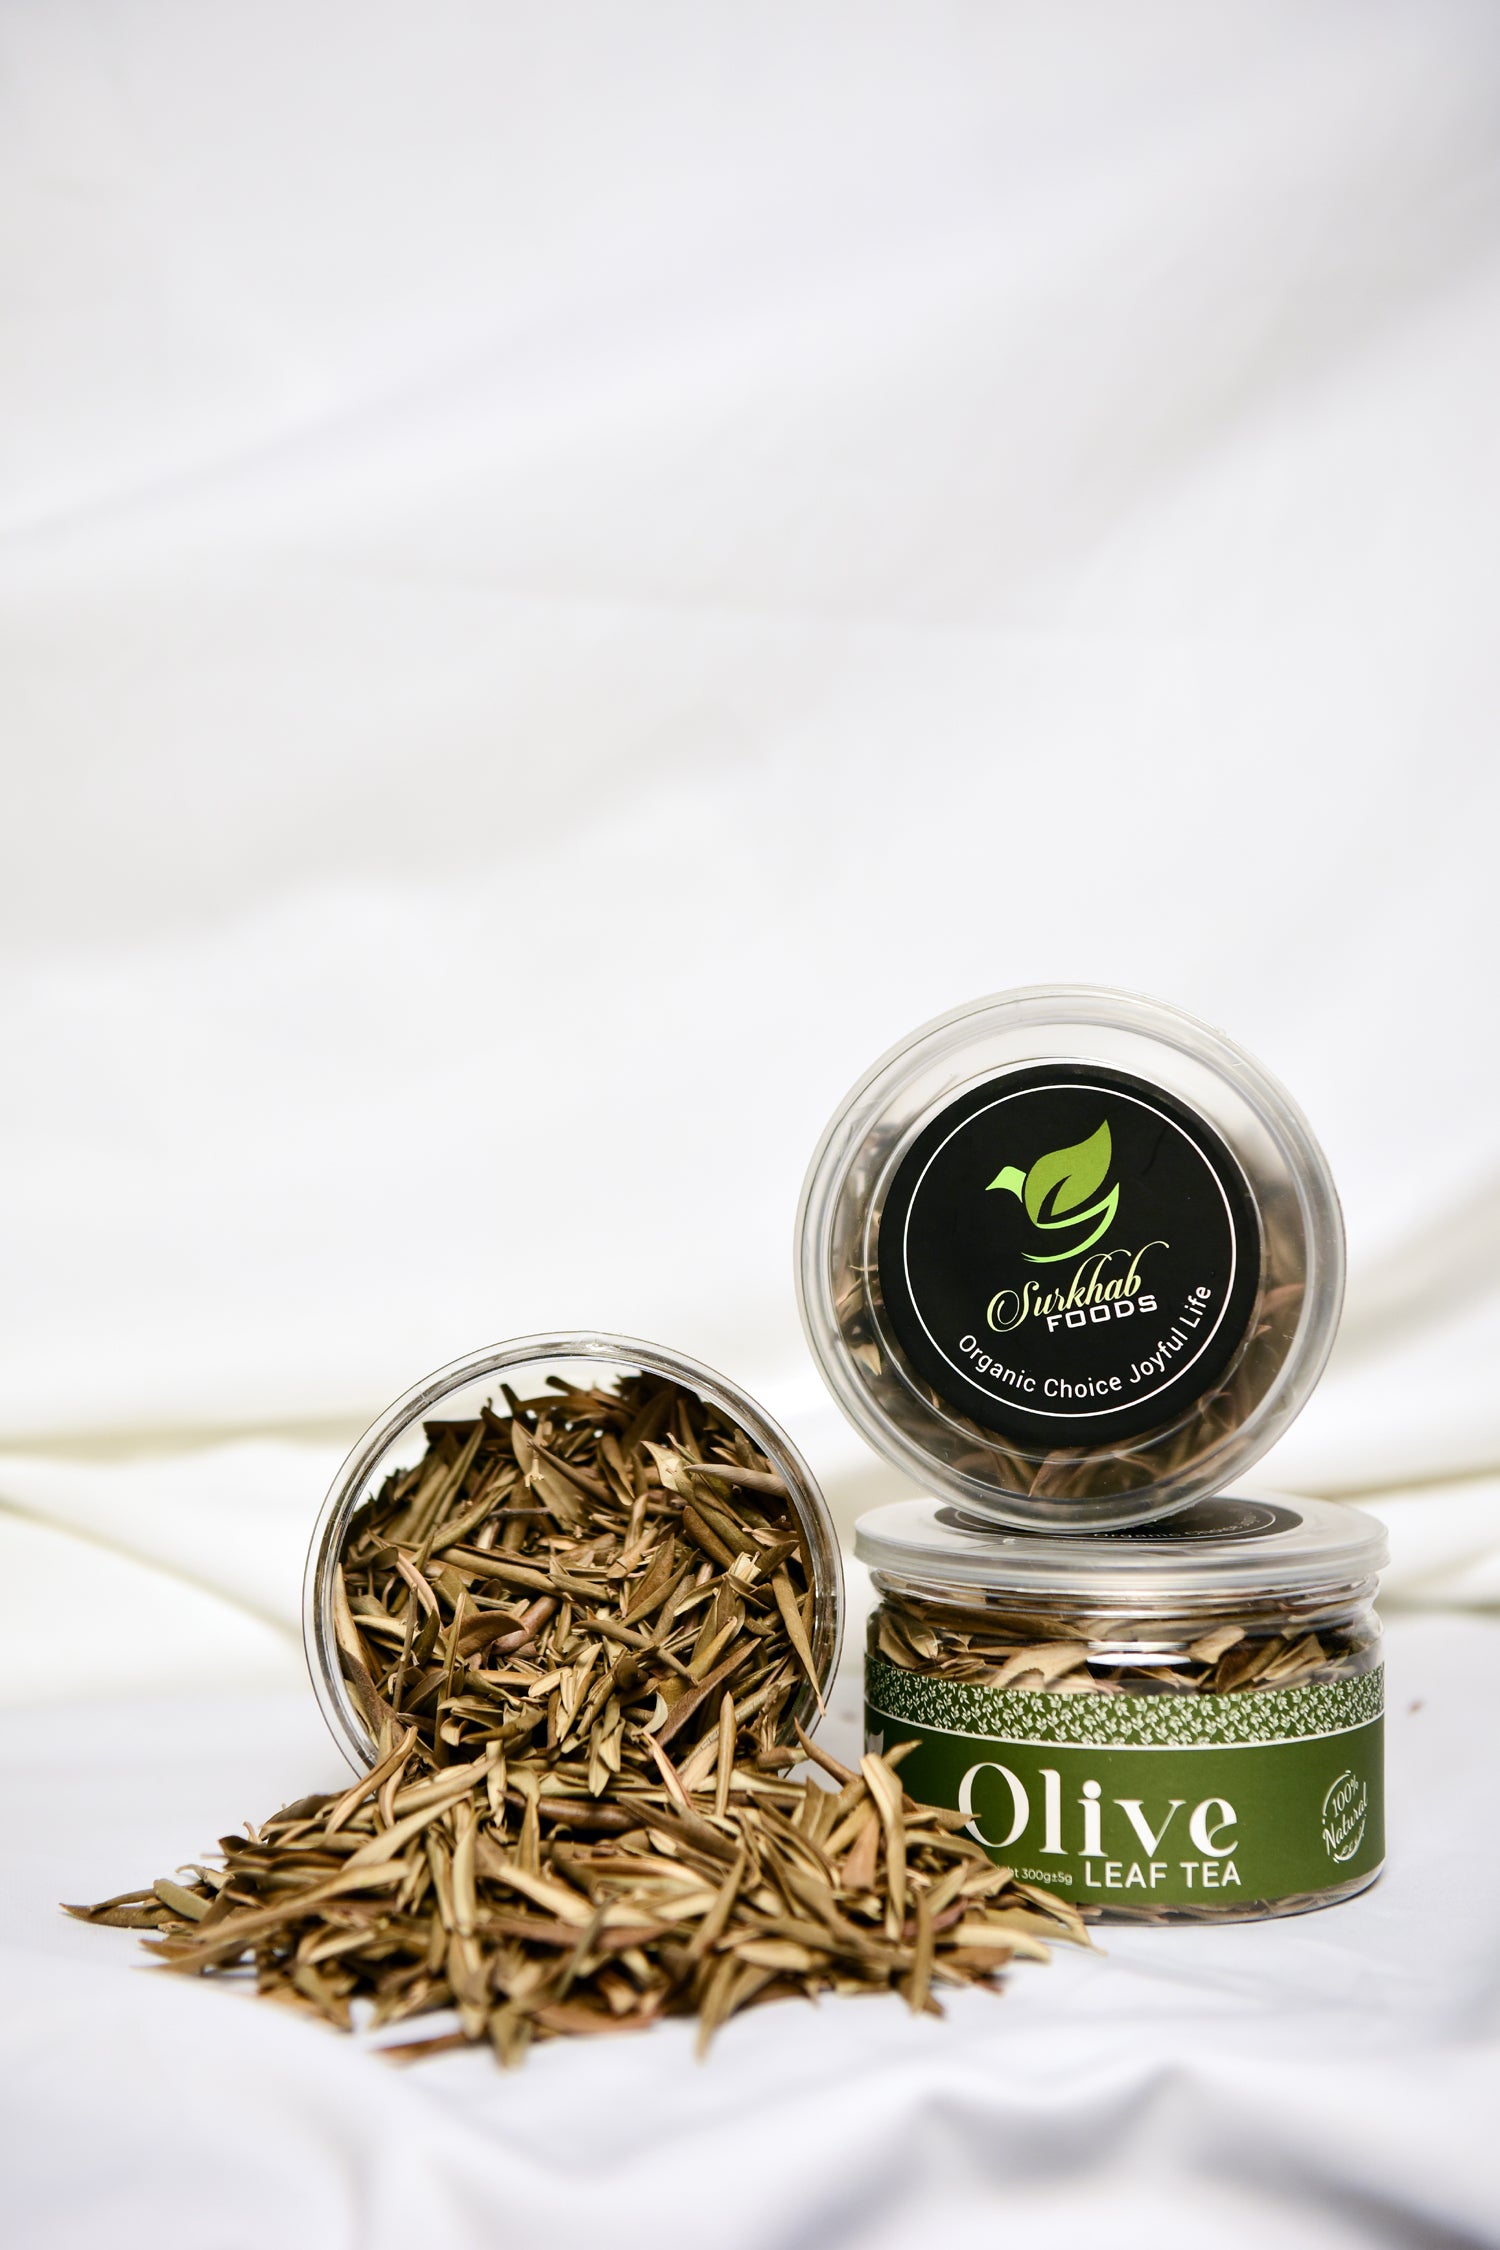 Surkhab Organic Olive Leaf Tea